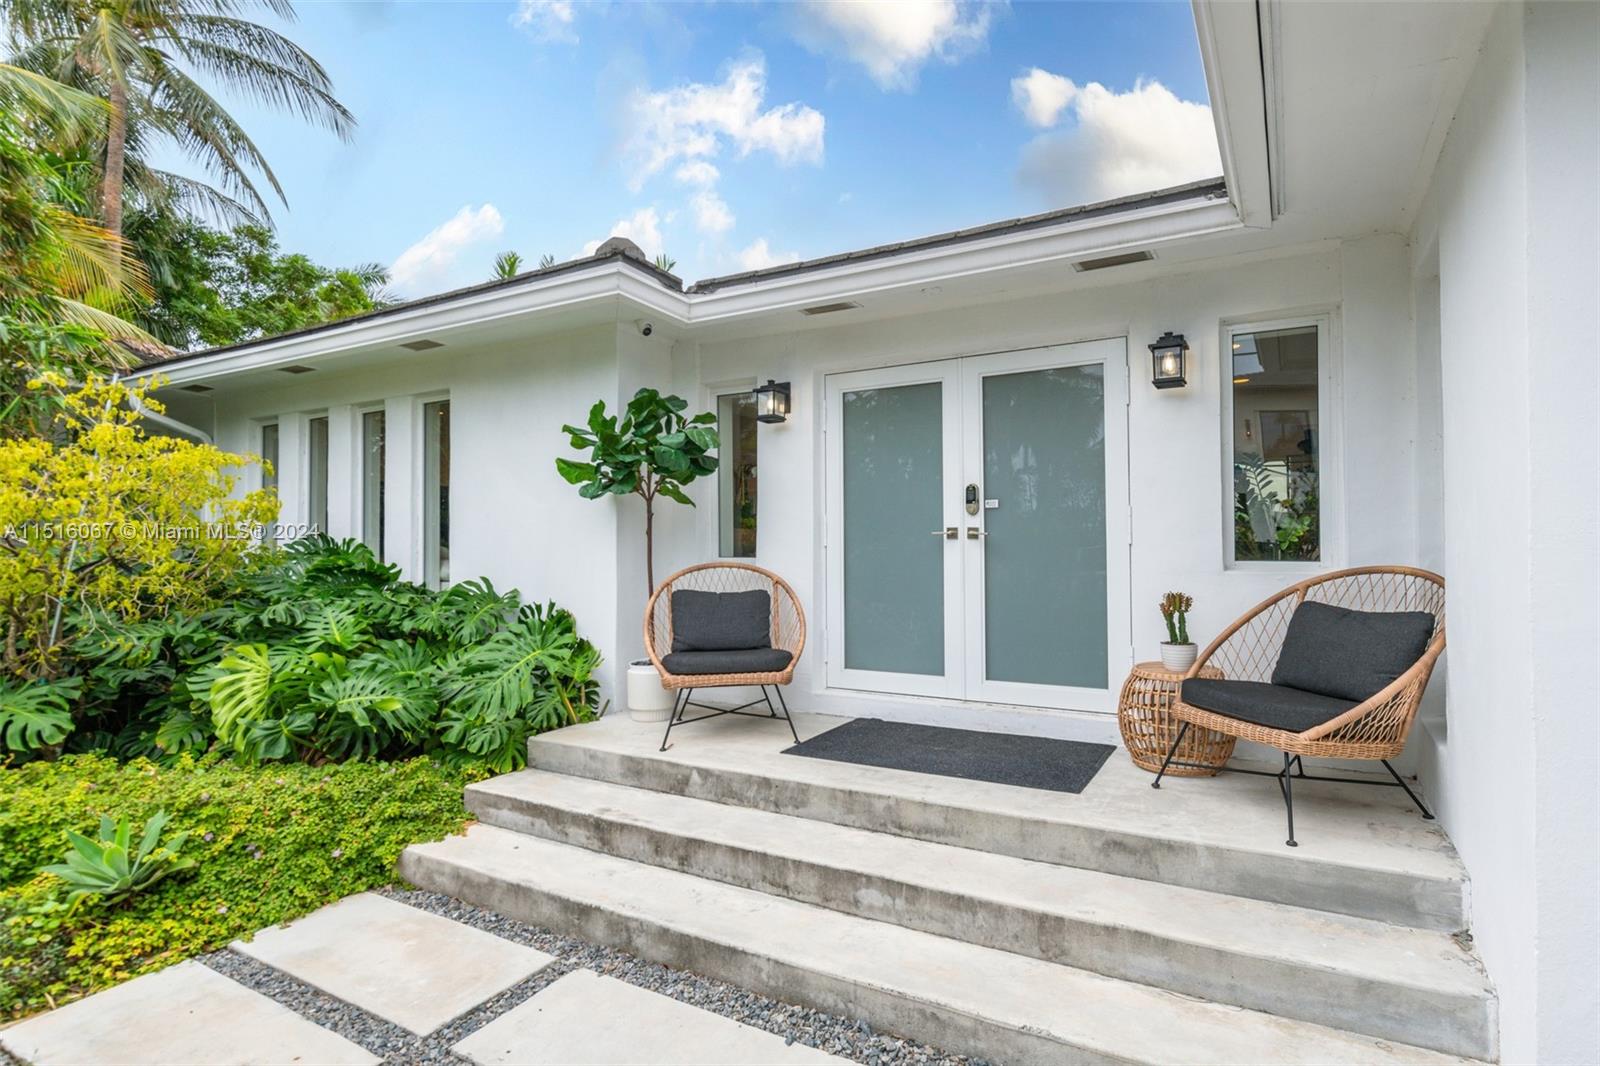 House for Sale in Miami Beach, FL